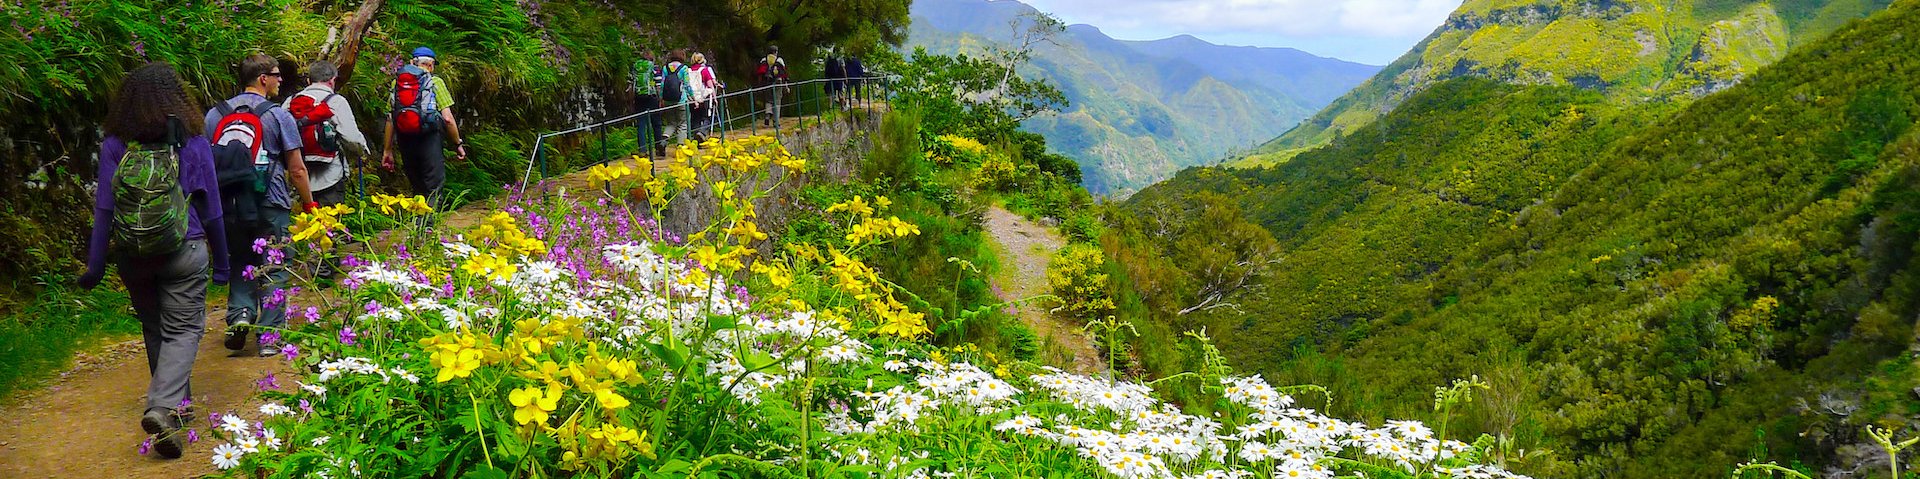 Wanderer auf Madeira 